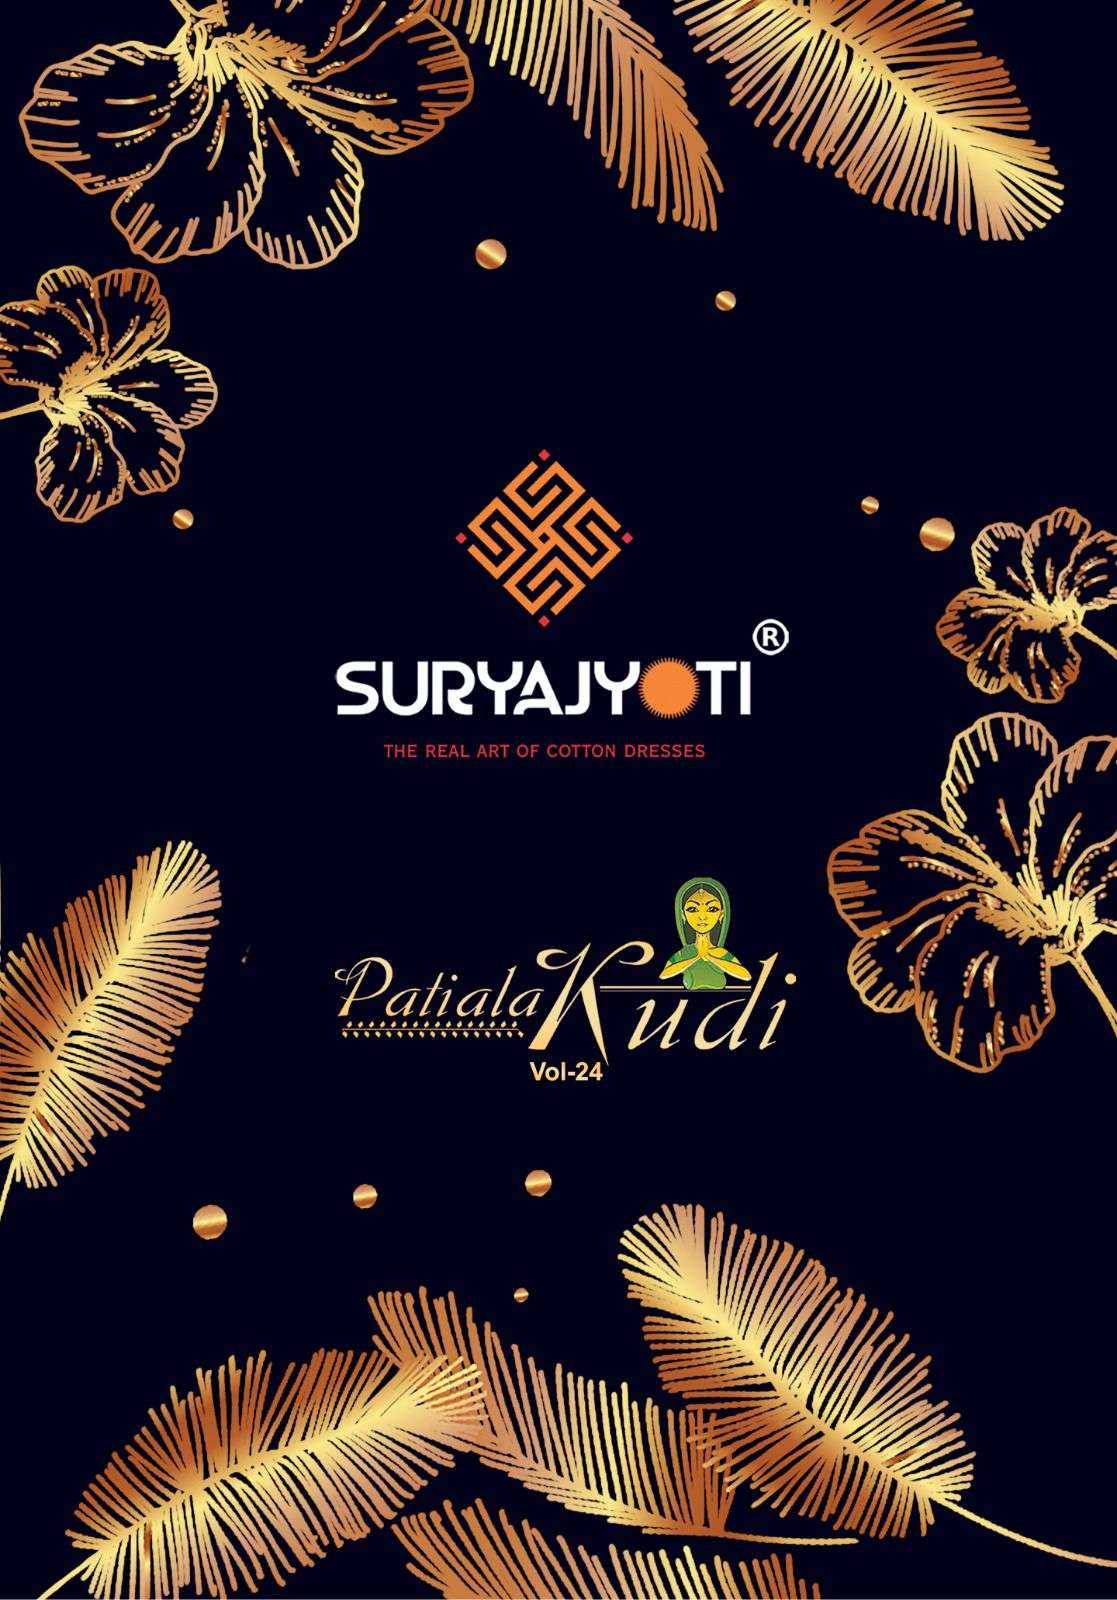 patiala kudi vol 24 by suryajyoti adorable cotton salwar kameez materials